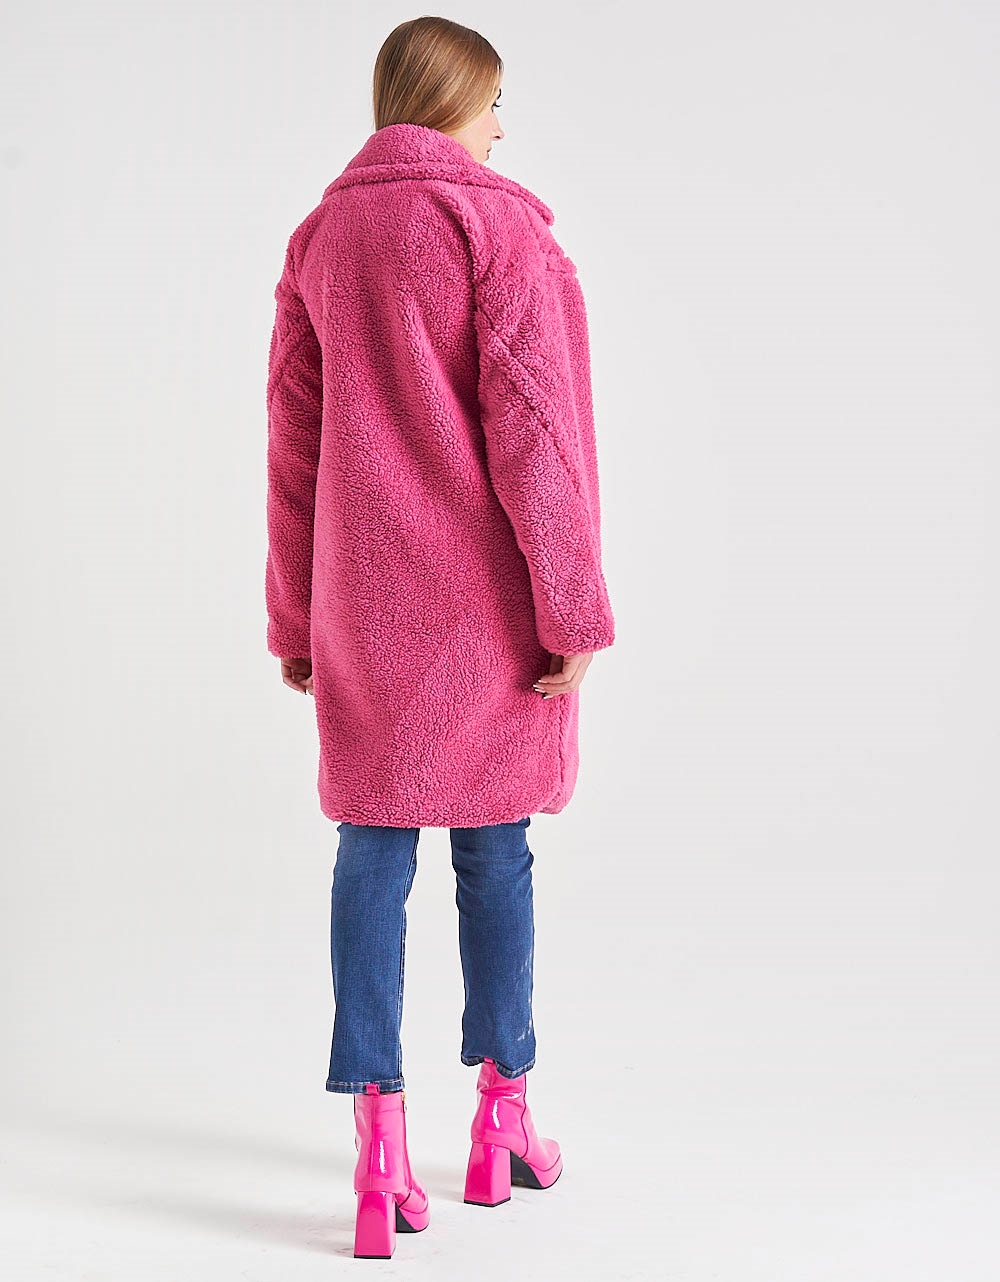 Εικόνα από Γυναικείo παλτό από οικολογική γούνα teddy με γιακά Φούξια